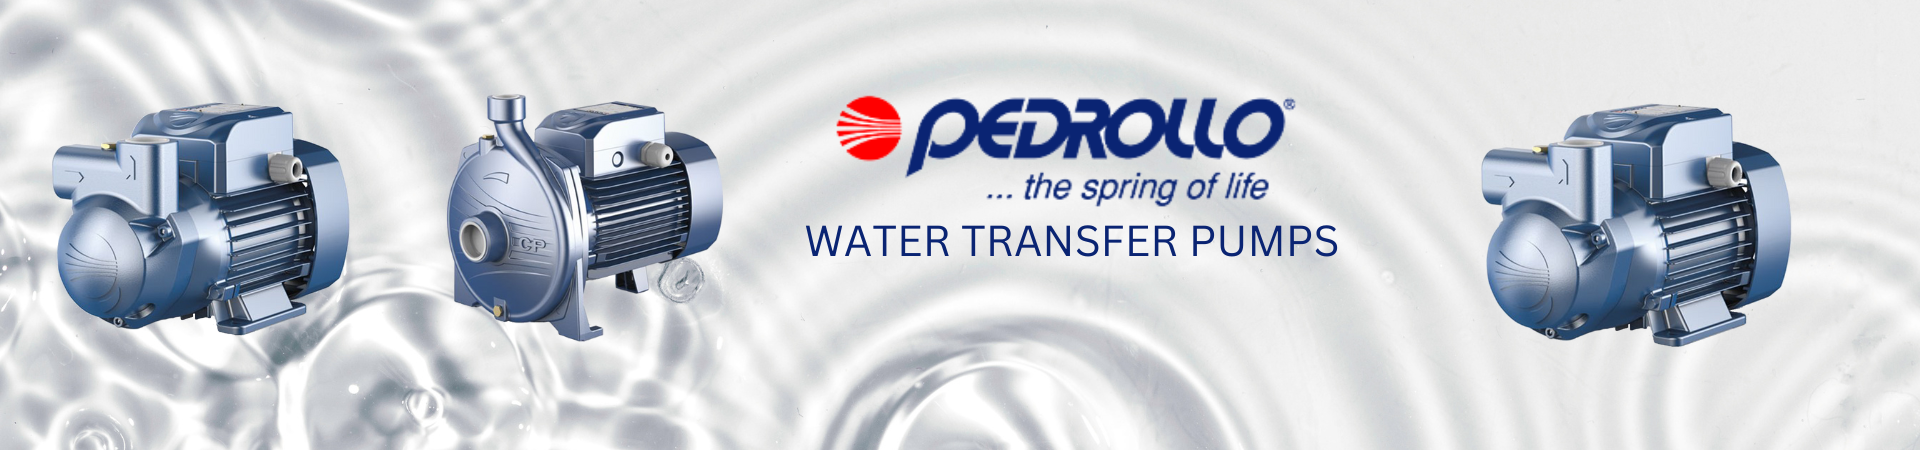 PEDROLLO Water Transfer Pumps